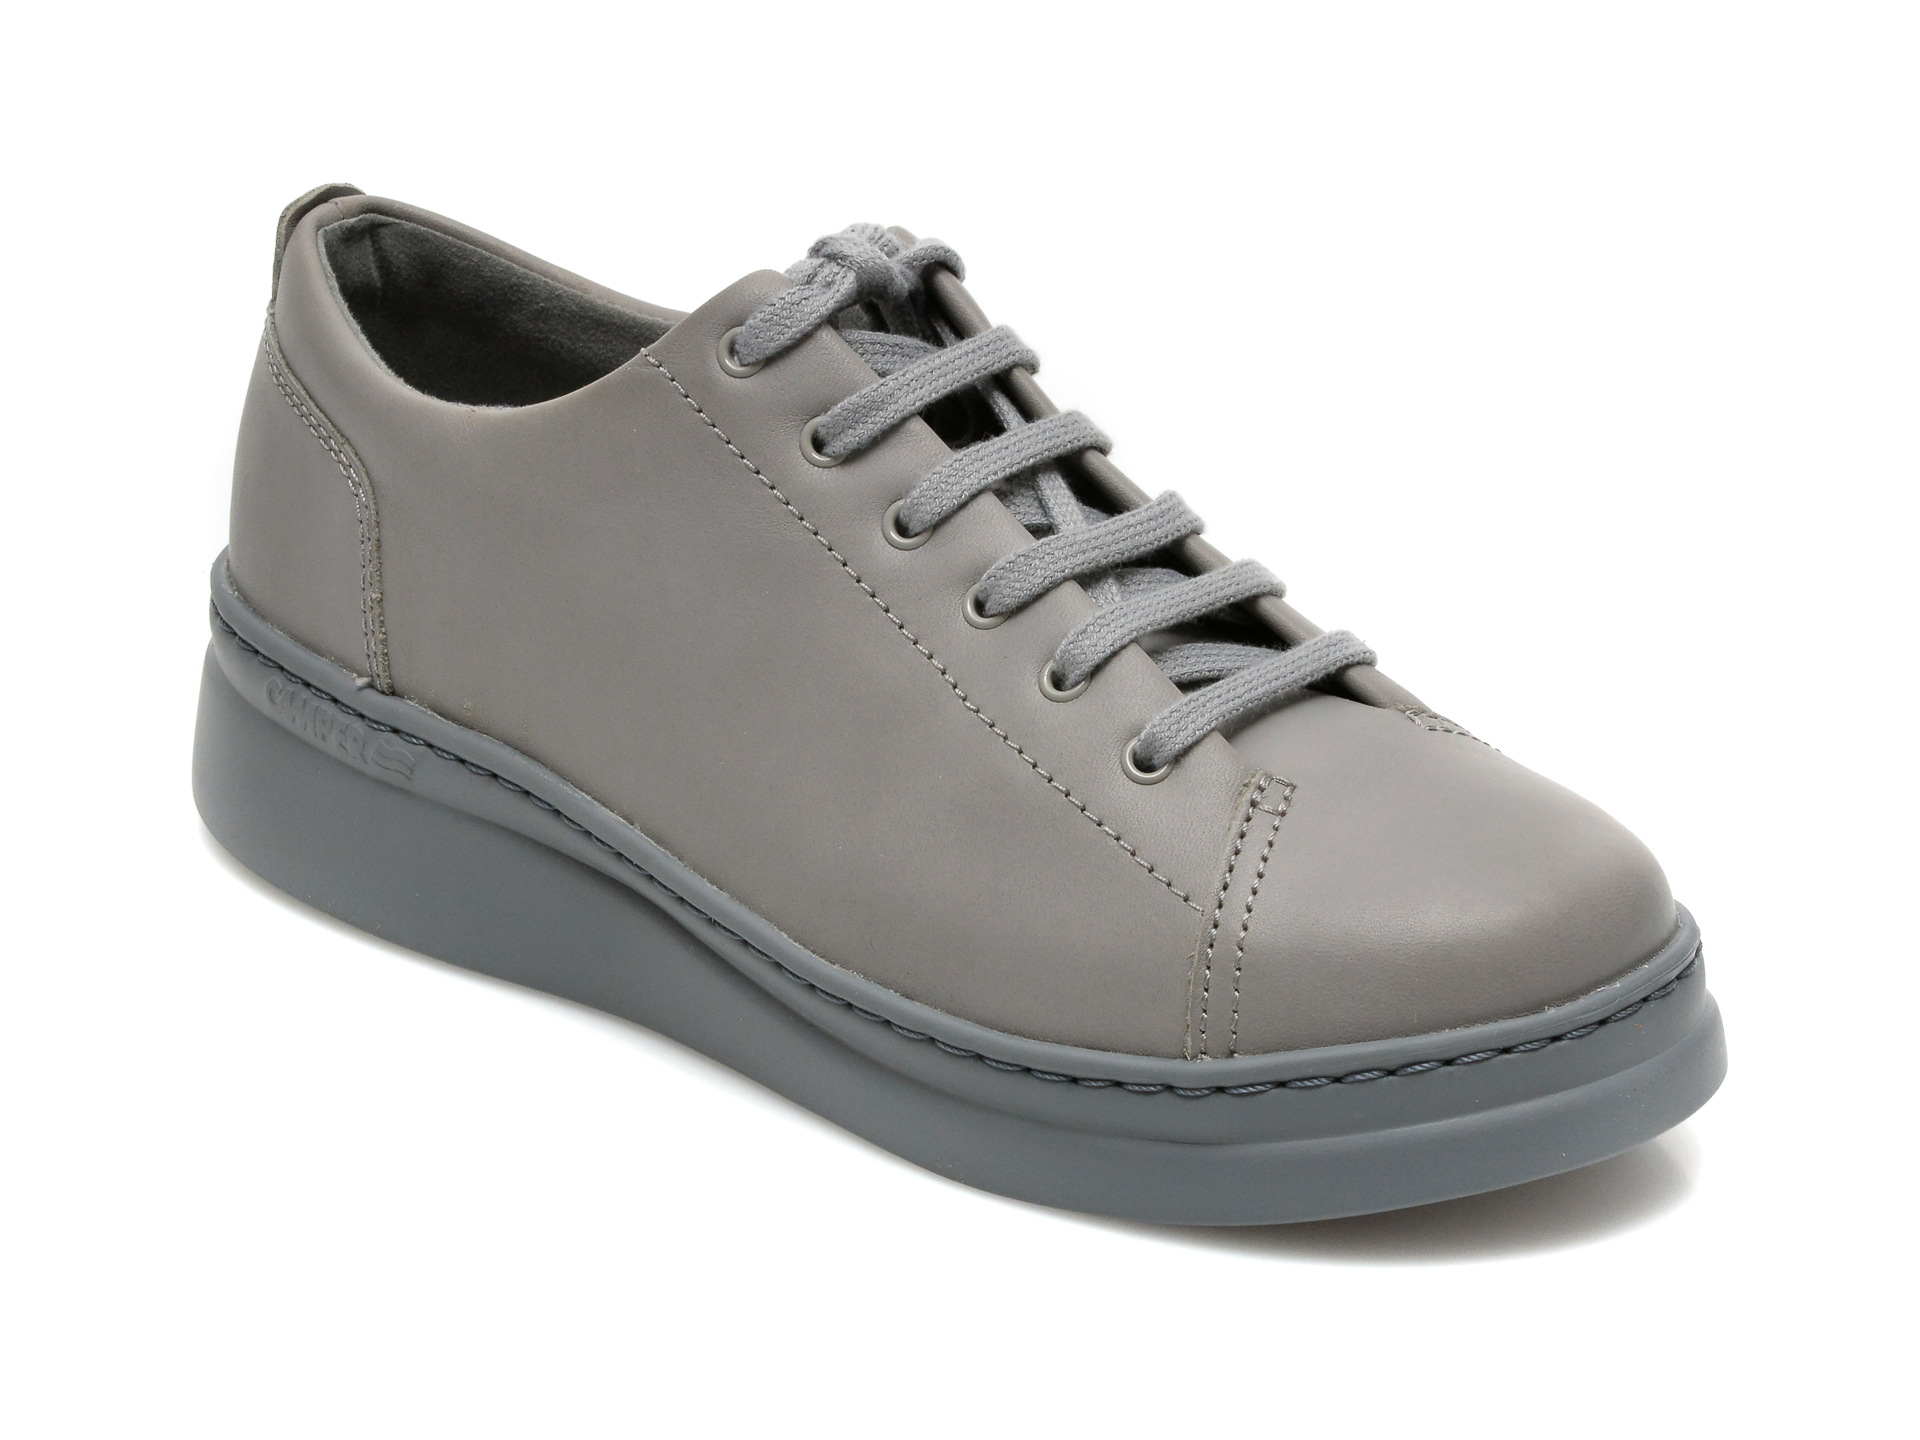 Pantofi CAMPER gri, K200645, din piele naturala imagine reduceri black friday 2021 Camper